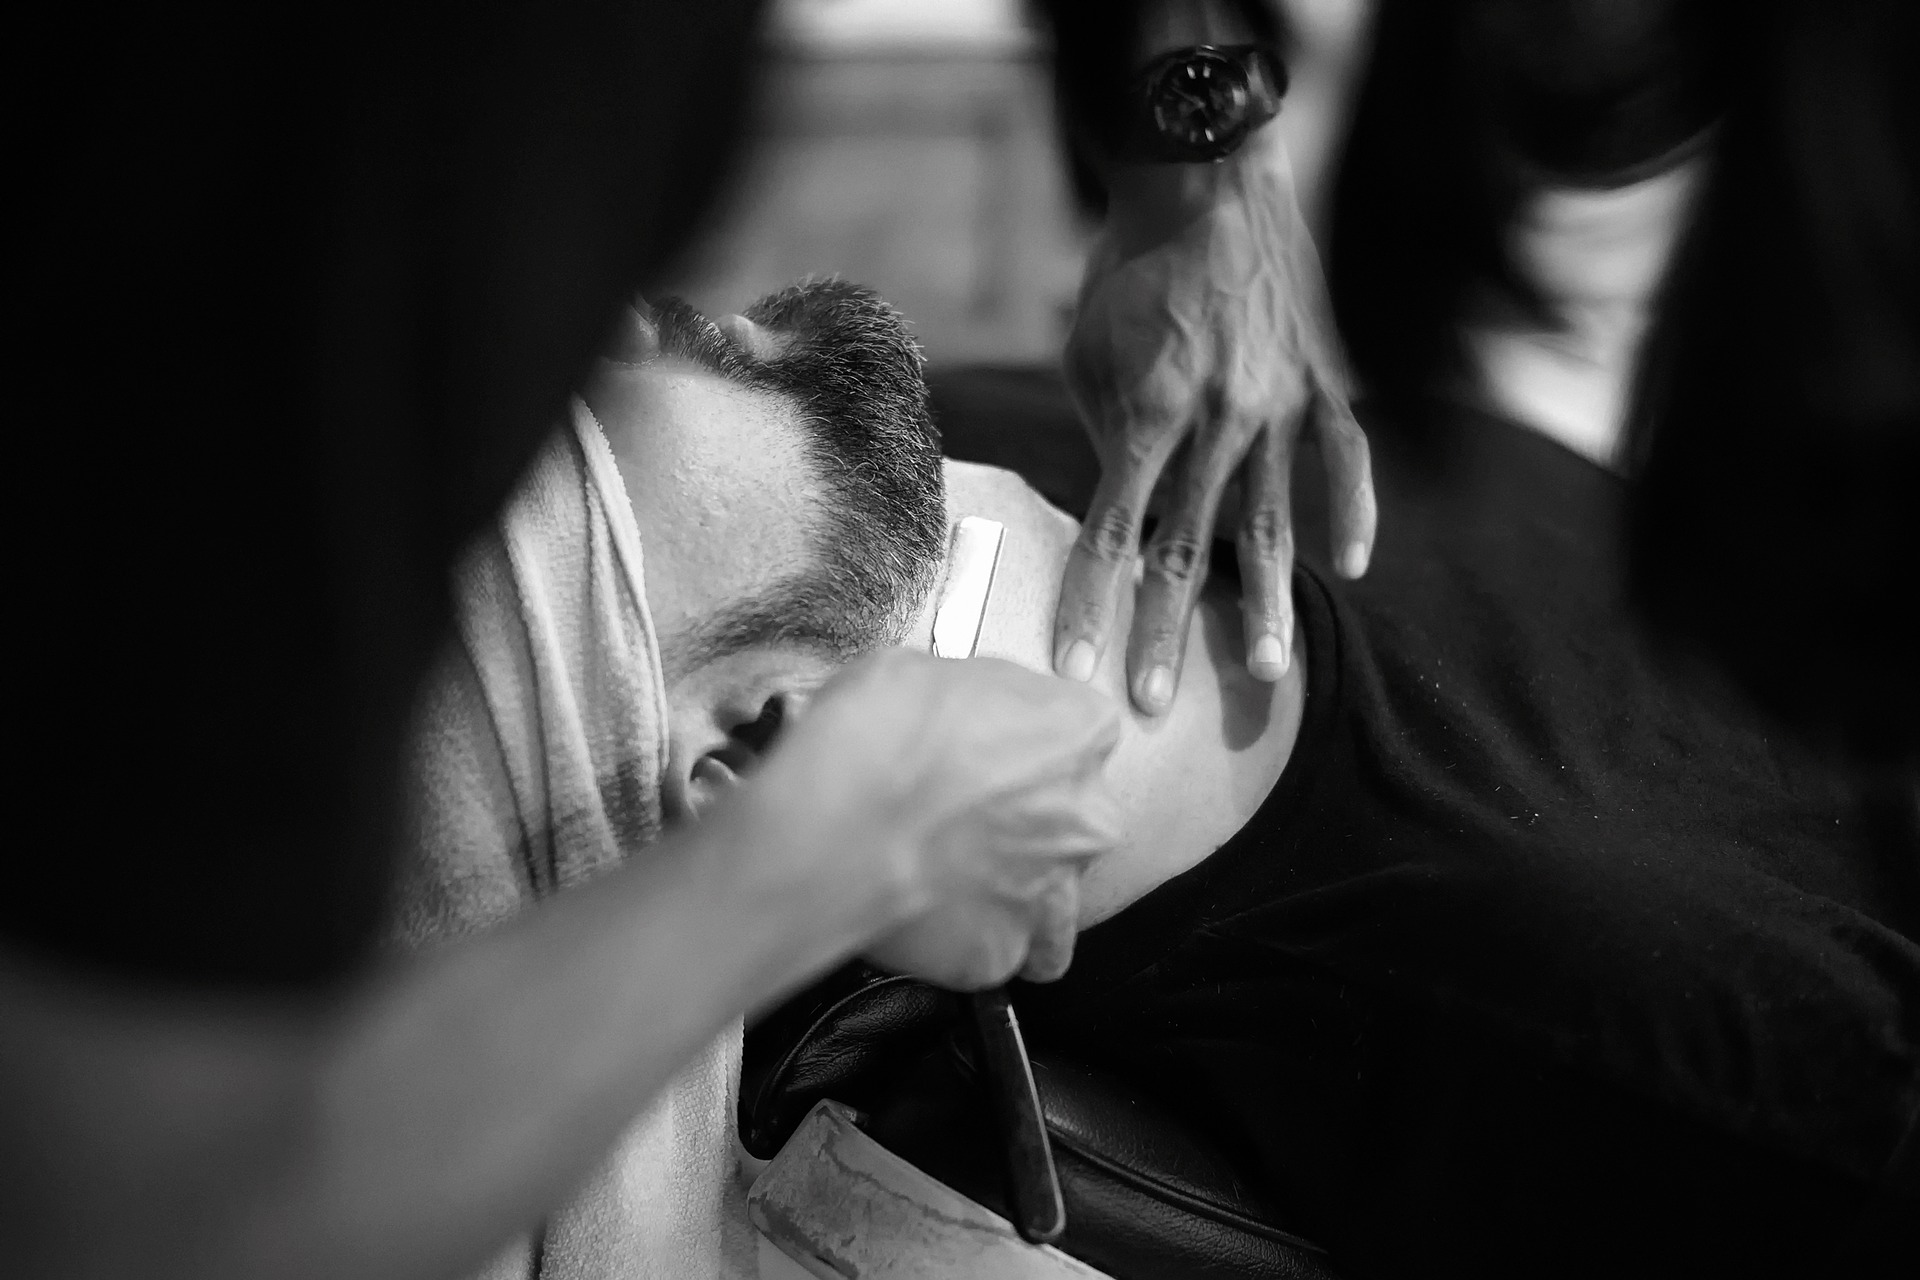 Golenie brzytwą – nowa moda z barber shopu. Sprawdź, dlaczego warto zrezygnować z maszynki!